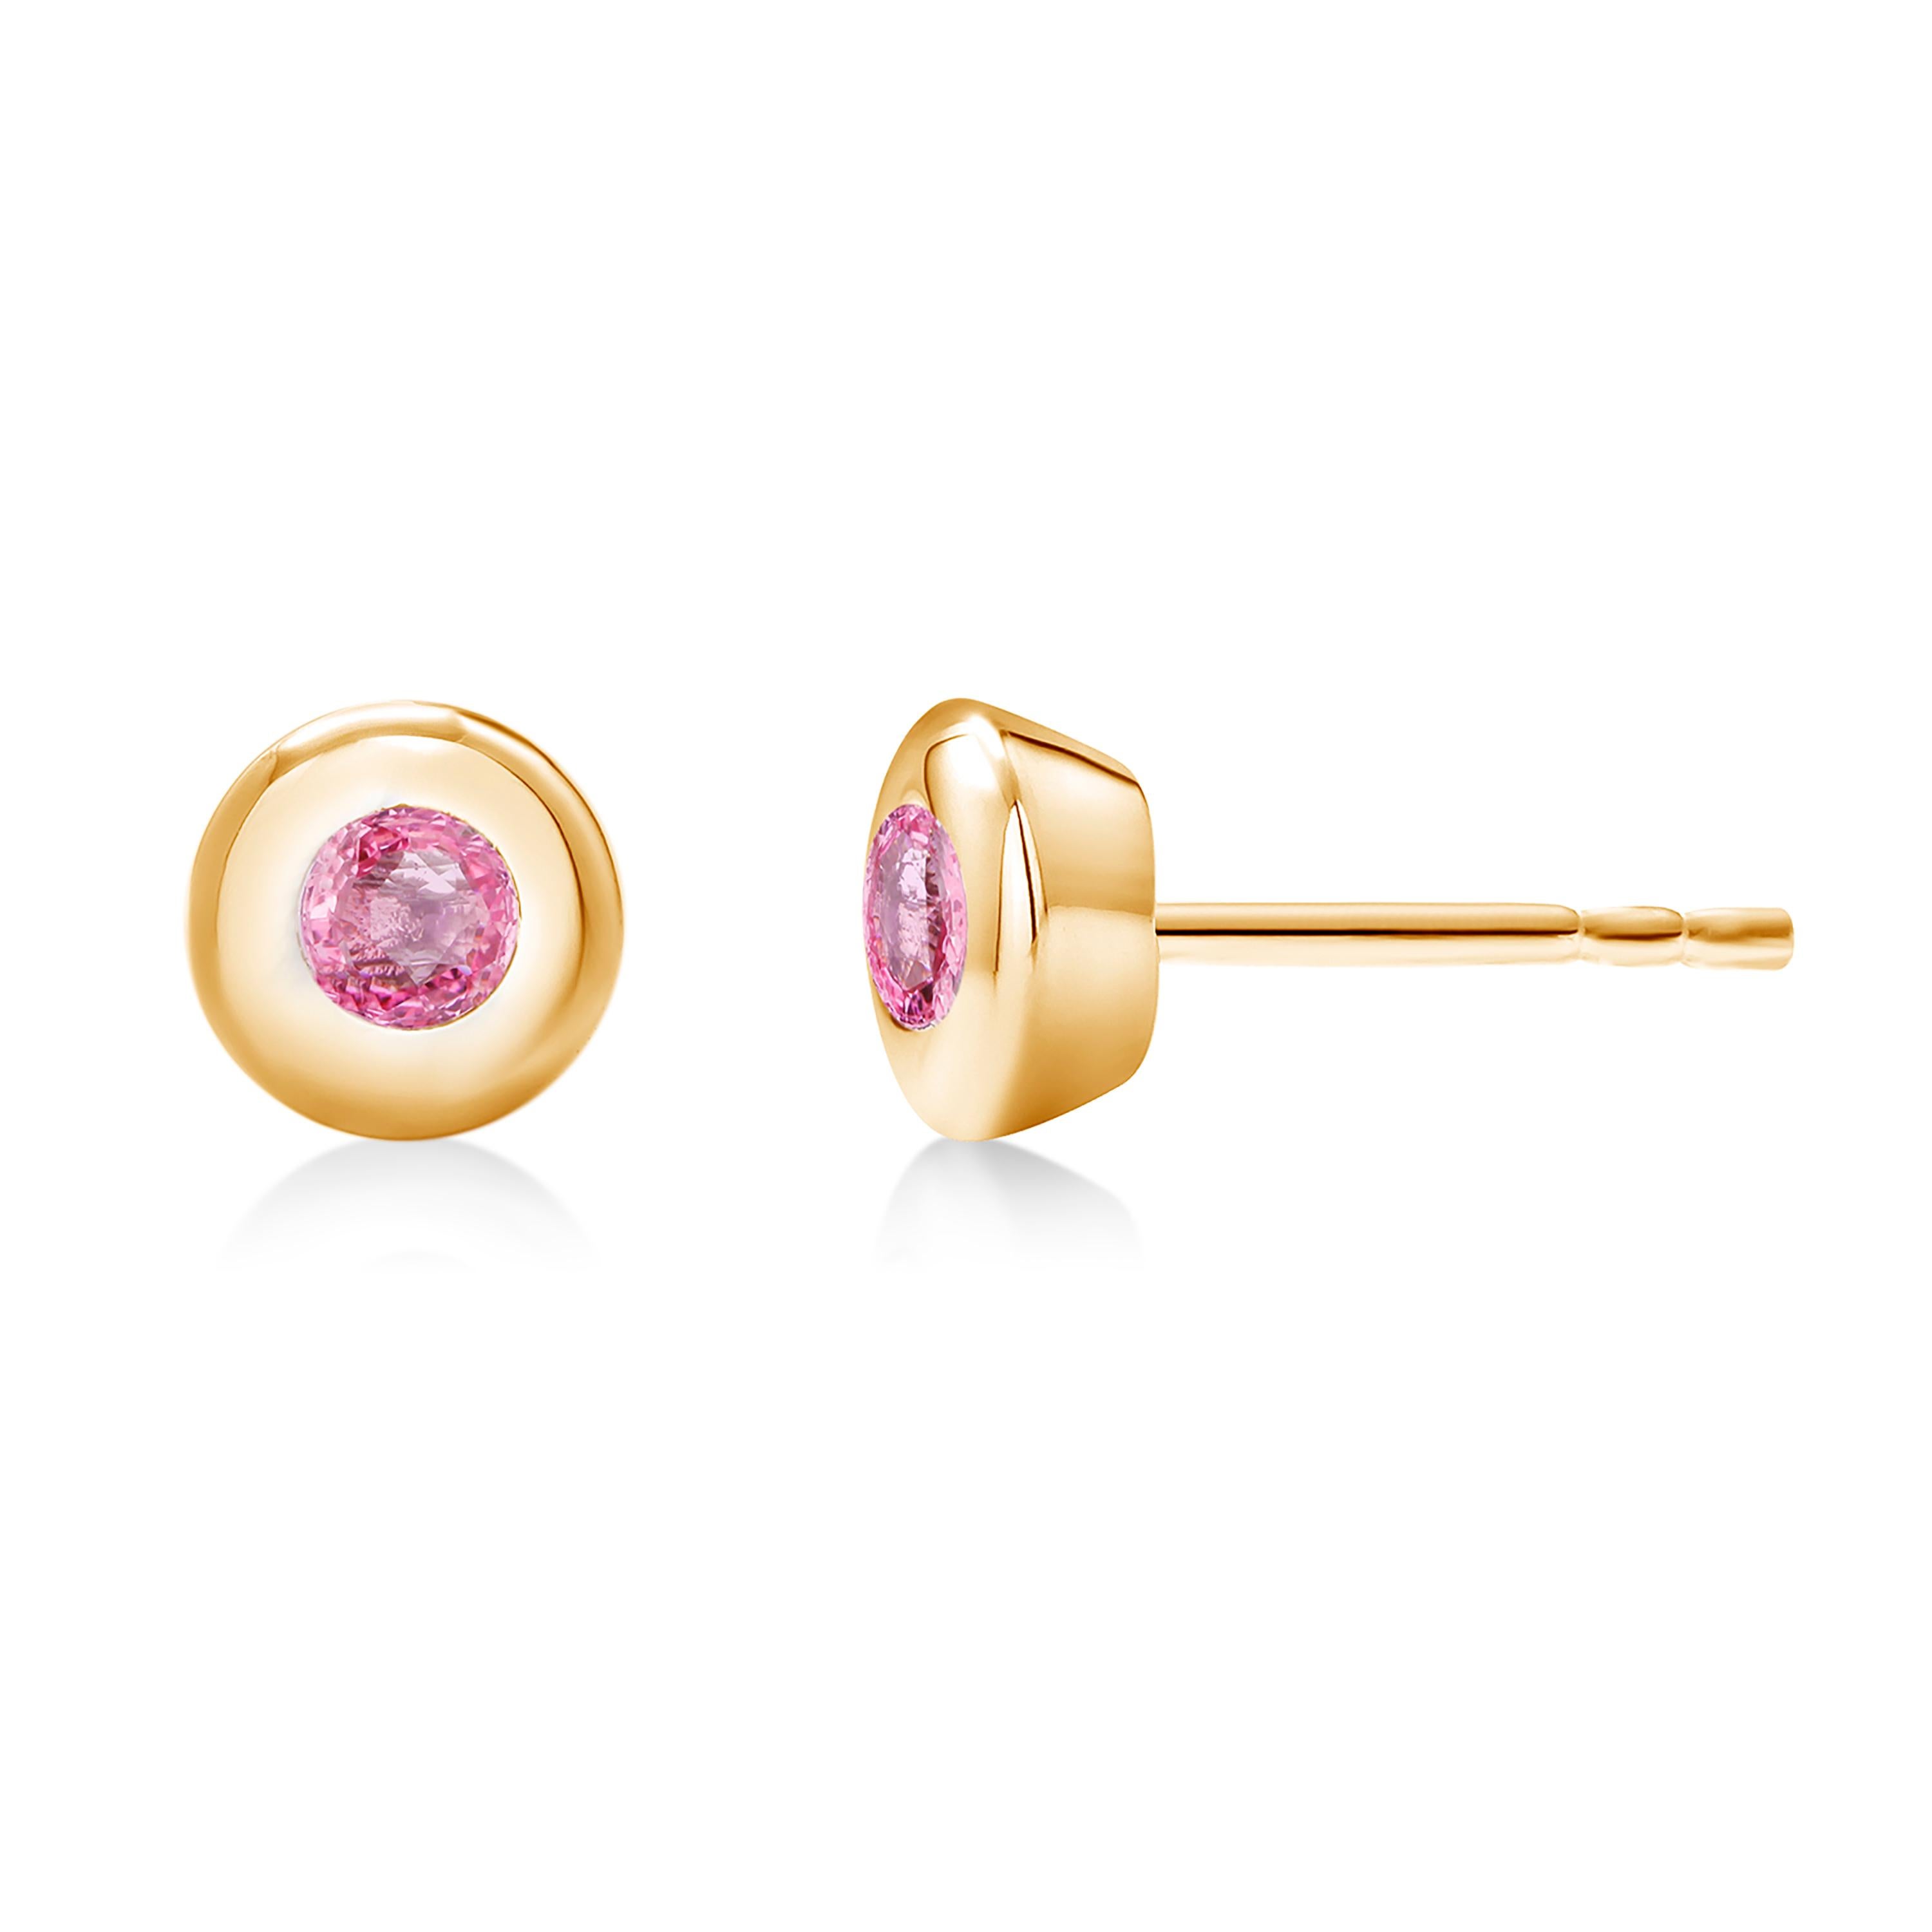 Contemporary 14 Karat Yellow Gold Bezel Set Pink Sapphire Stud Earrings Weighing 0.30 Carat